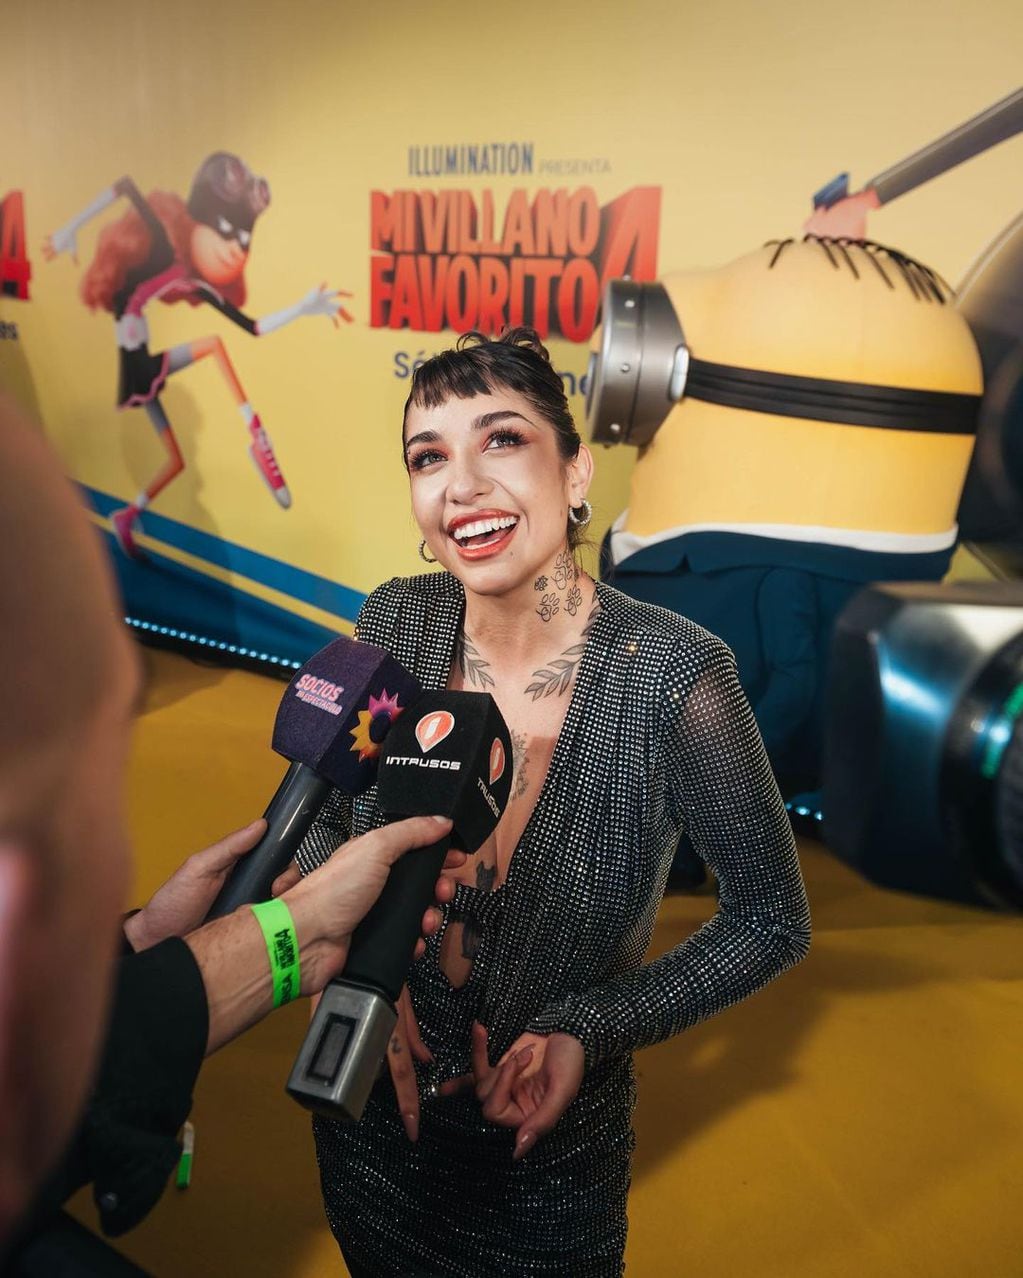 Mega brillo y botas: María Becerra deslumbró en la premiere de “Mi Villano Favorito 4”